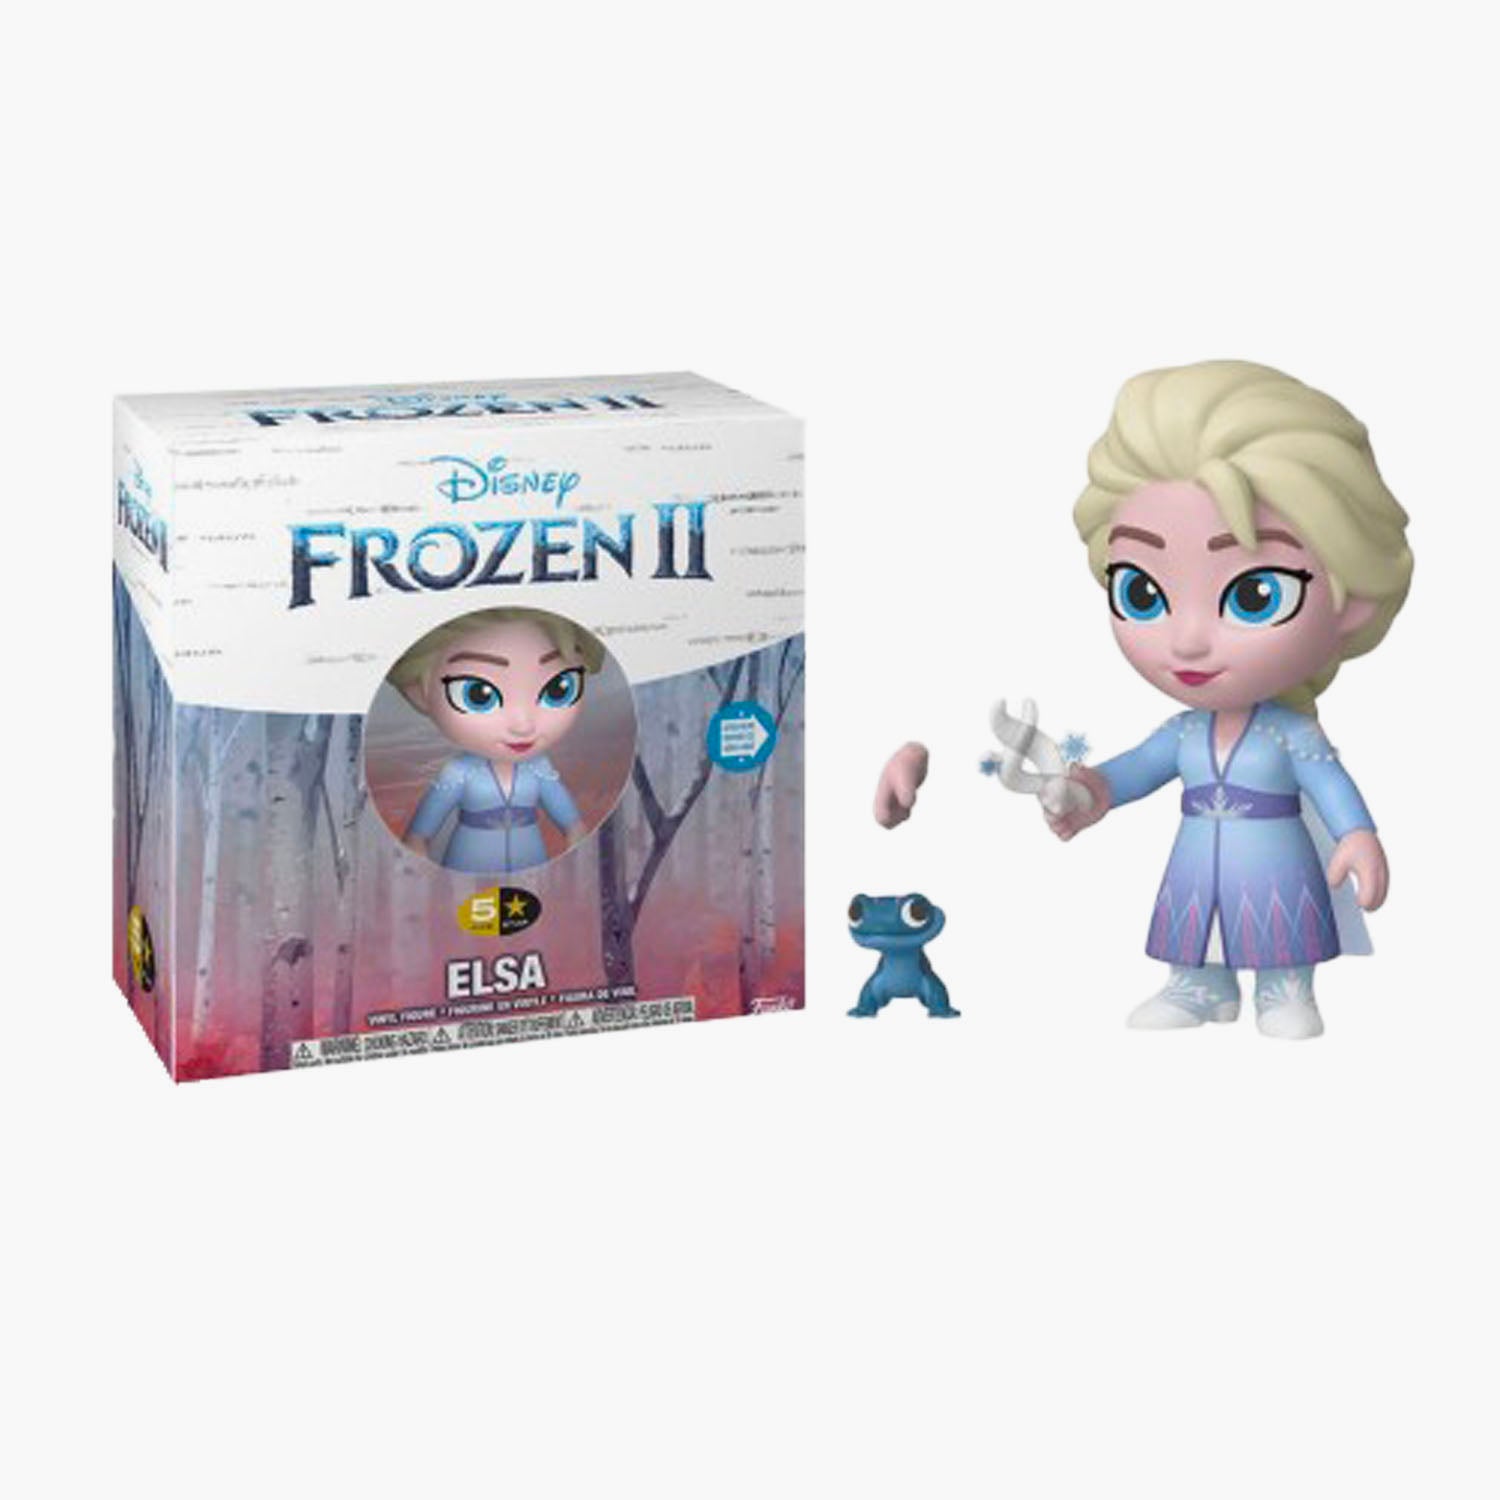 Elsa Frozen II Figurine